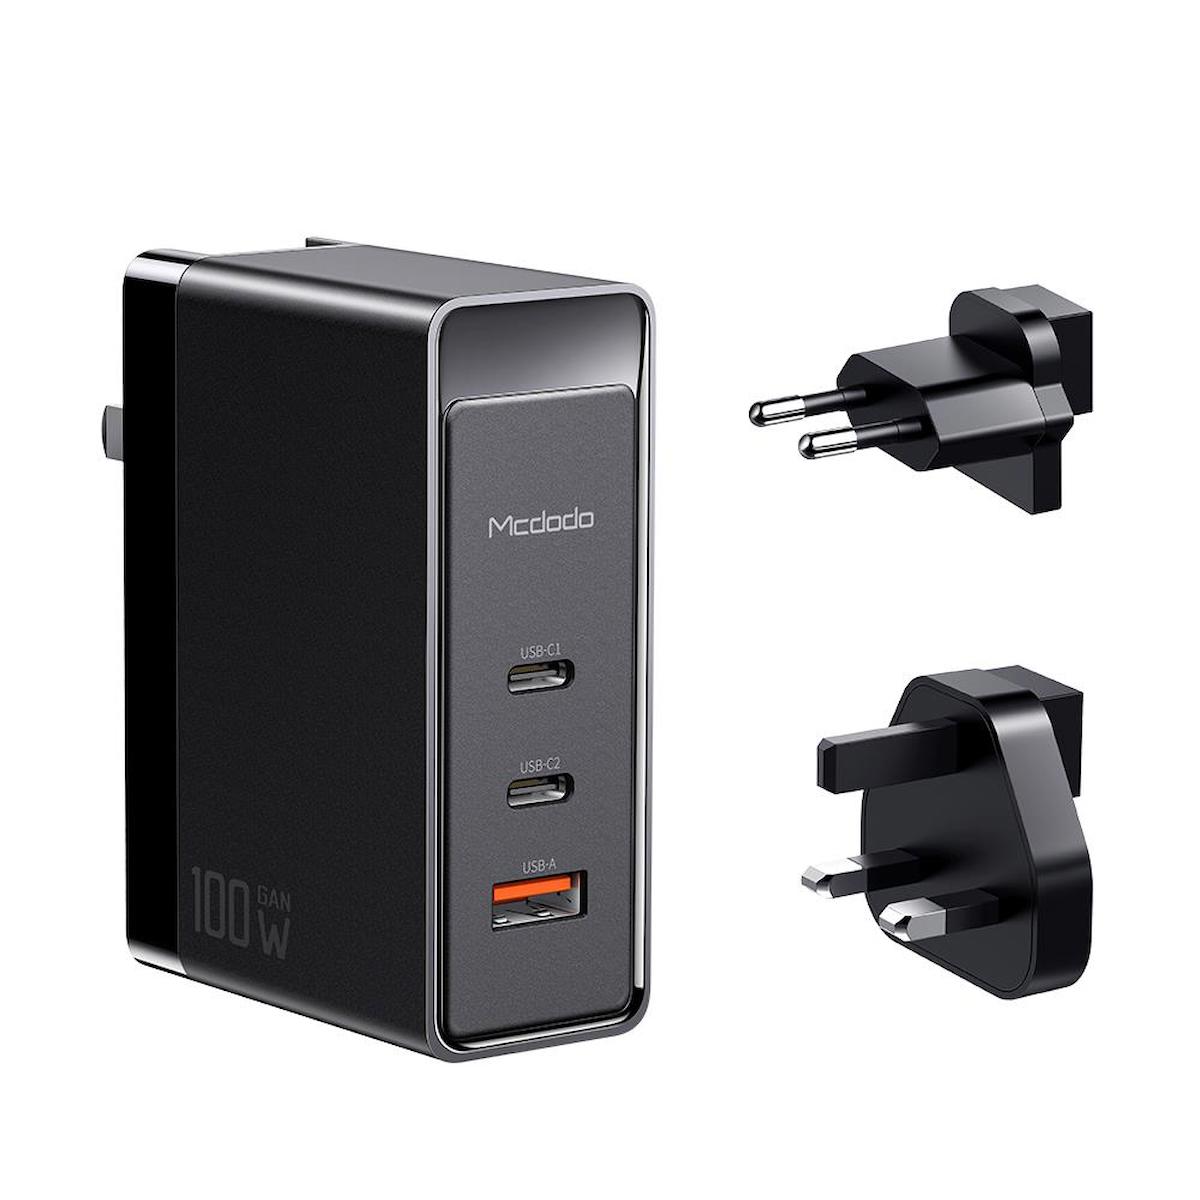 Mcdodo CH-8101 Universal USB Kablolu Hızlı Şarj Aleti Siyah